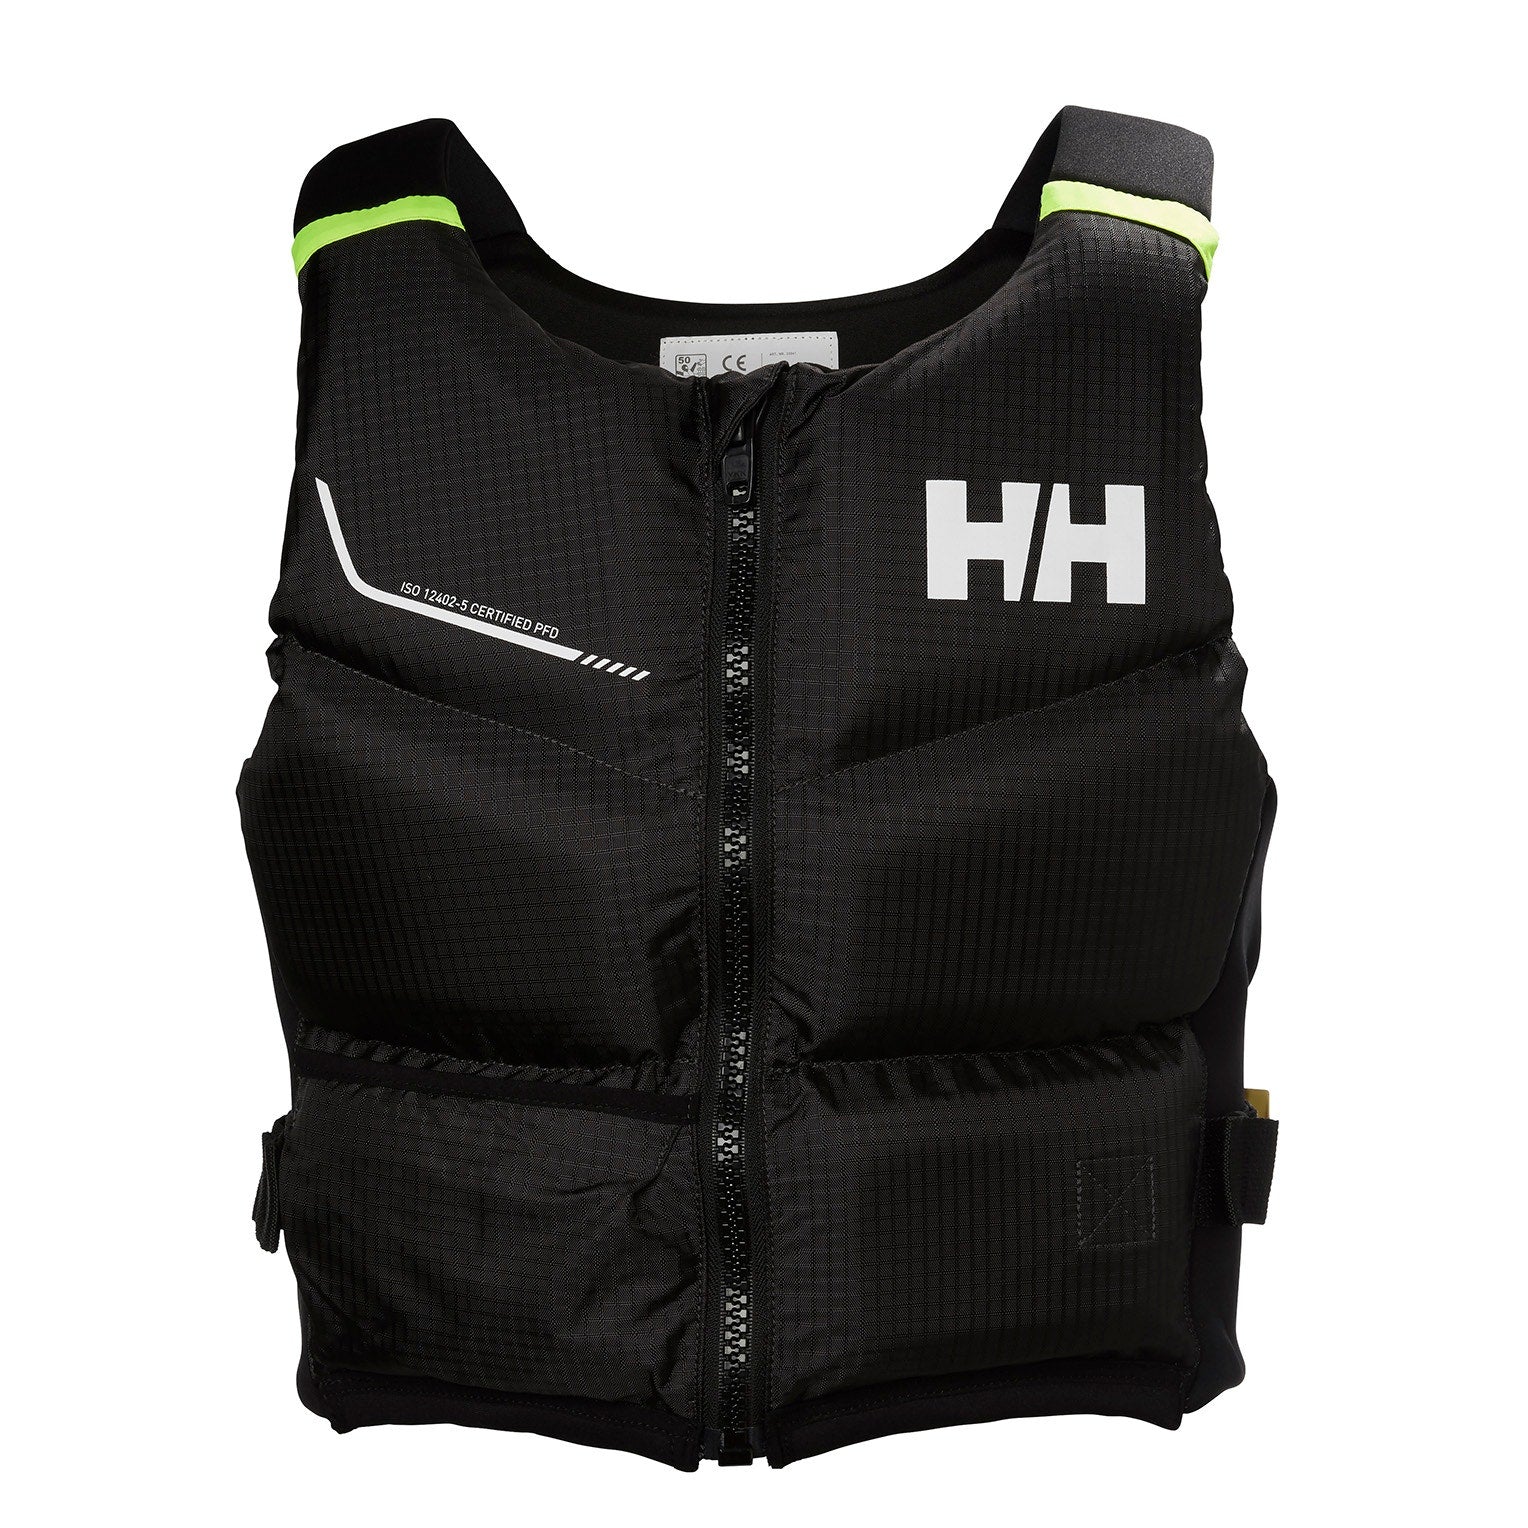 Helly Hansen Rider Stealth Zip Low-Bulk Unisex Life Vest -